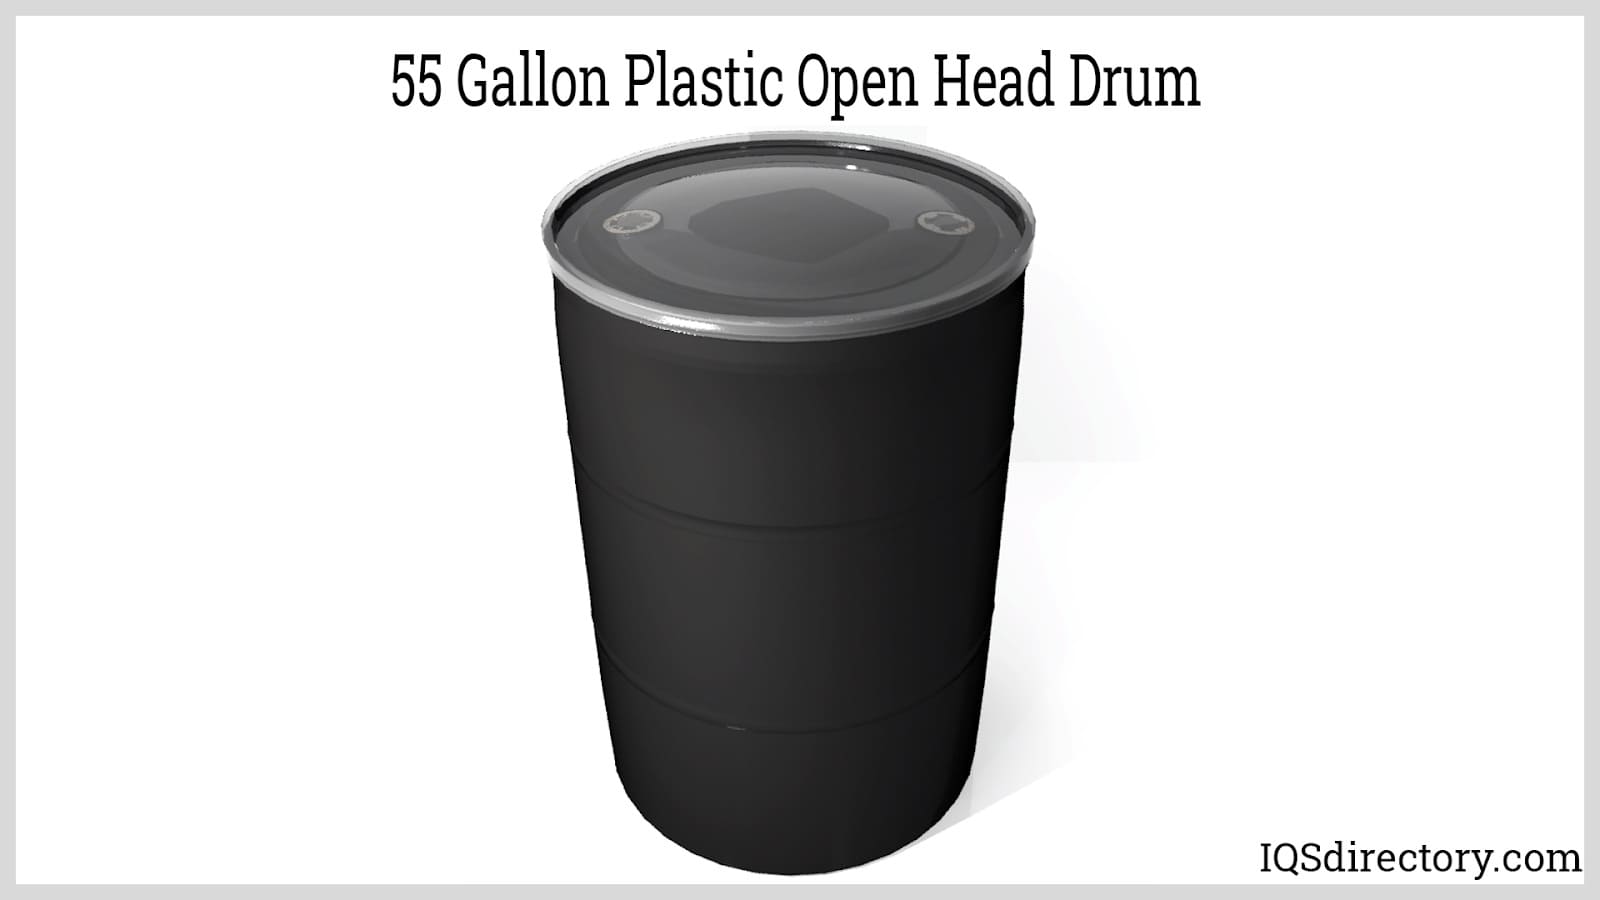 55 Gallon Plastic Open Head Drum